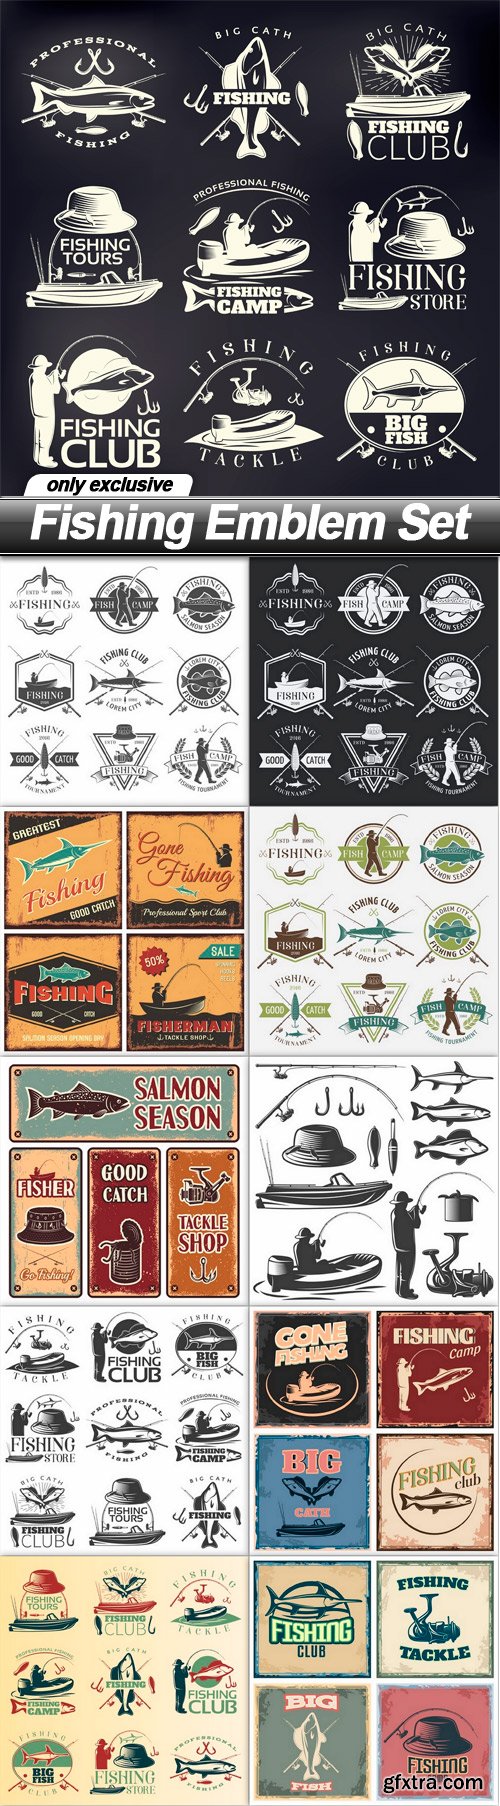 Fishing Emblem Set - 11 EPS